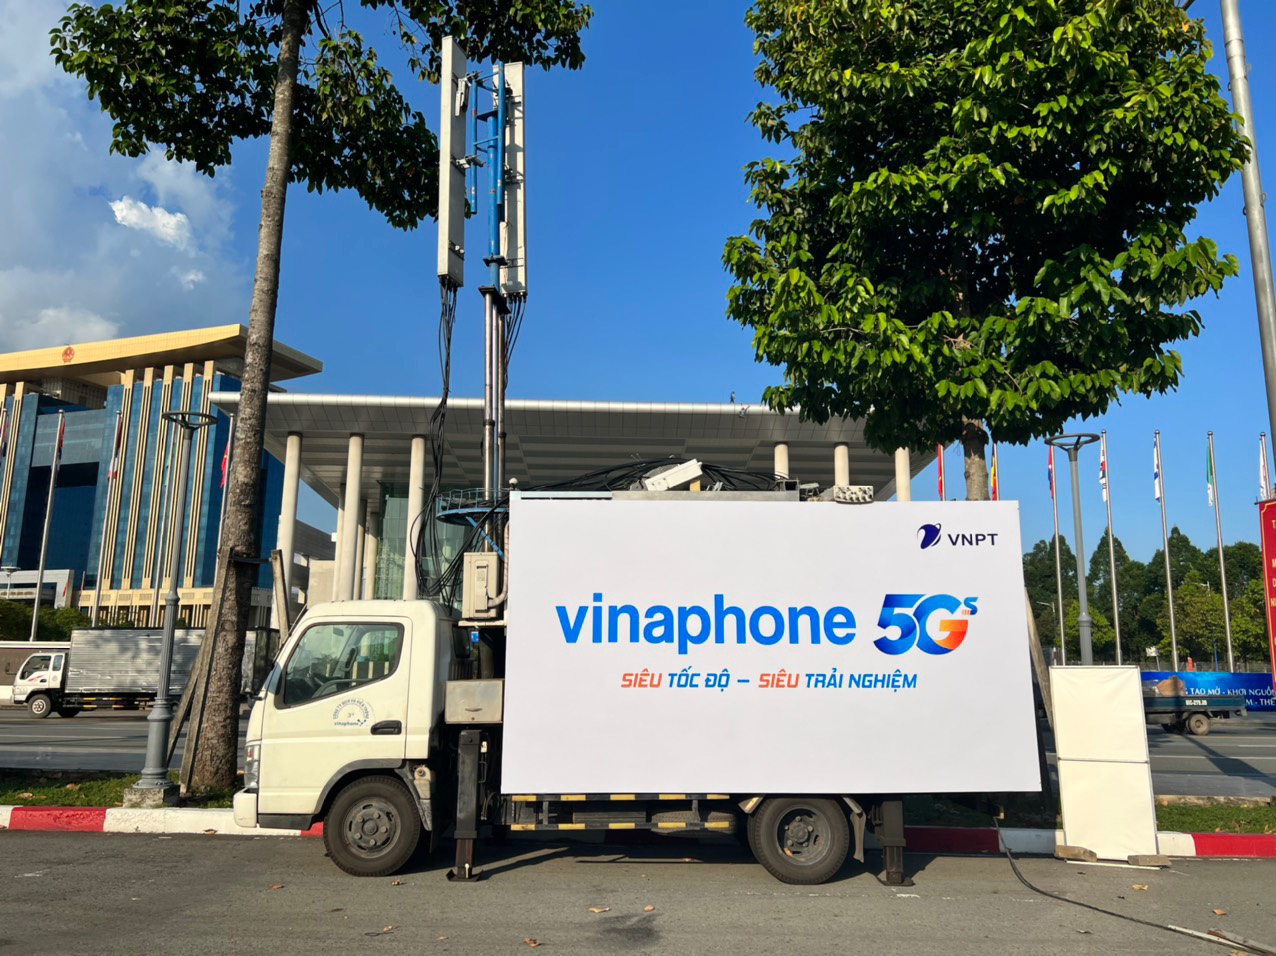 VNPT/VinaPhone đã trang bị thêm một trạm phát sóng VinaPhone 5G lưu động ngay tại Trung tâm triển lãm quốc tế WTC